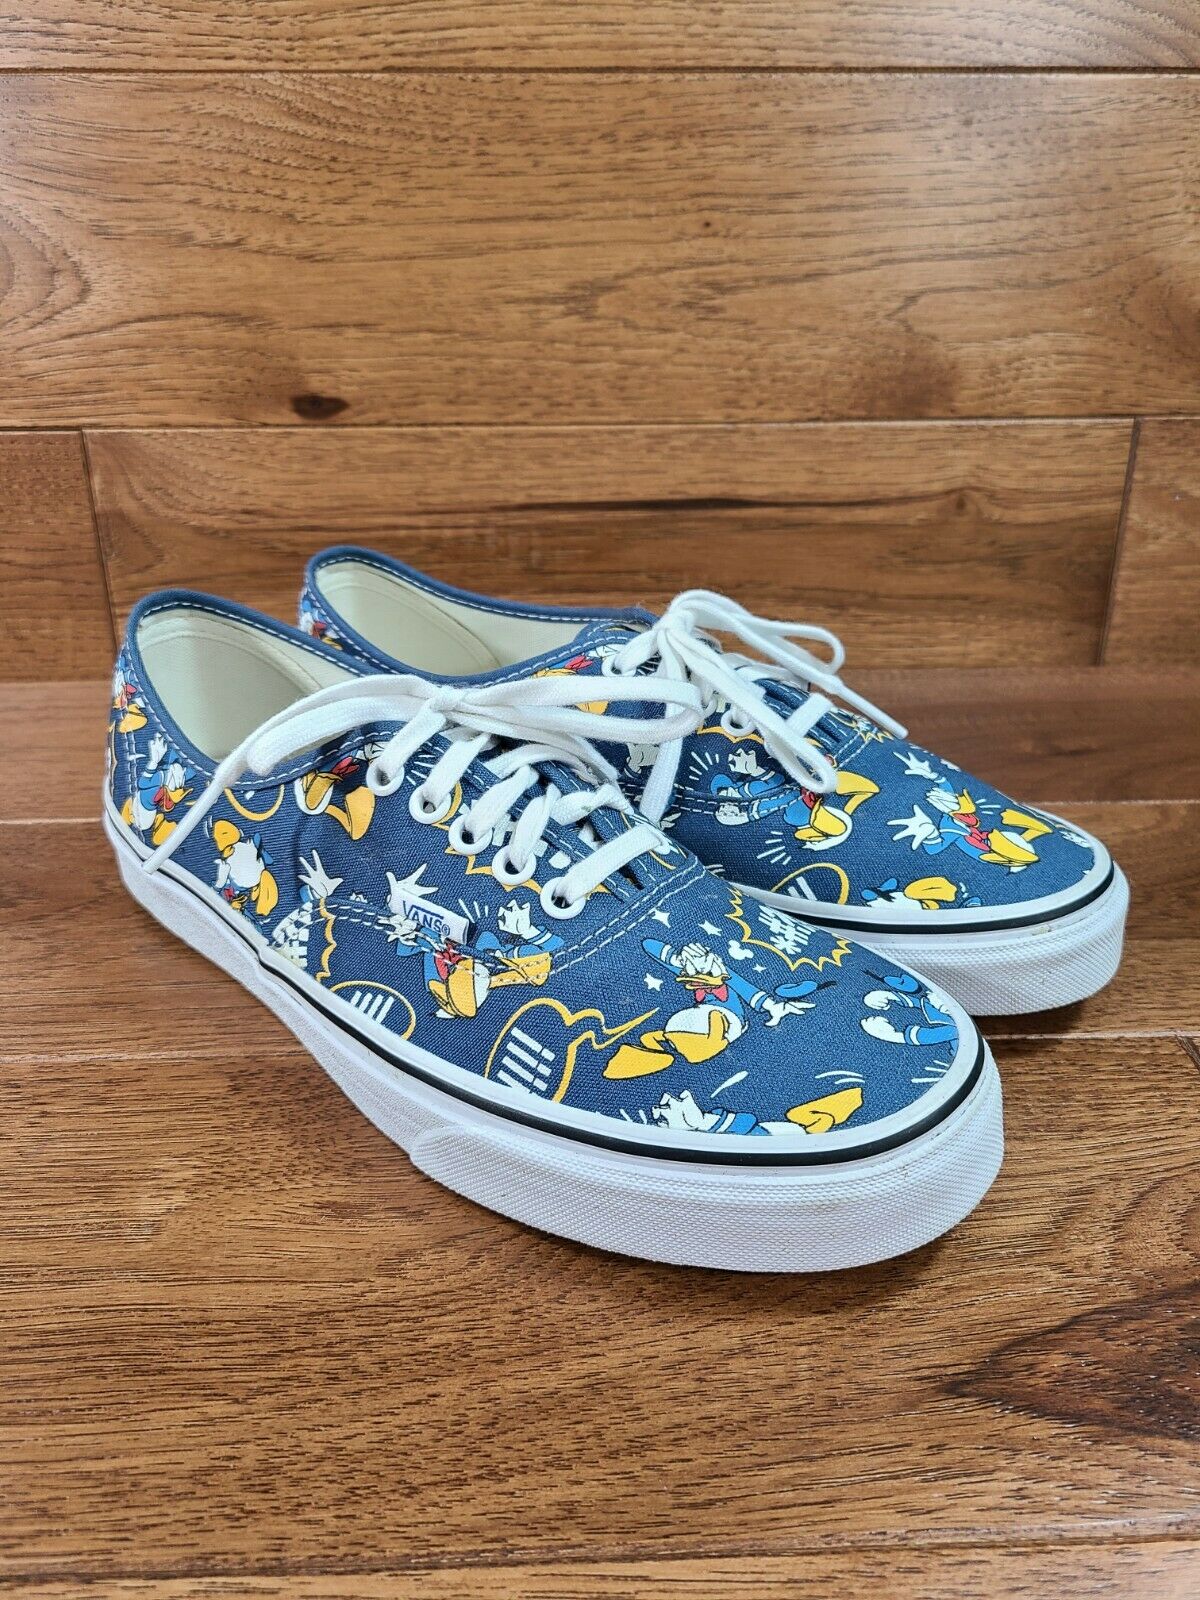 Vans Disney Donald Duck Blue Sneakers Shoes Men's Size 9, Women’s 10.5 **MINT**